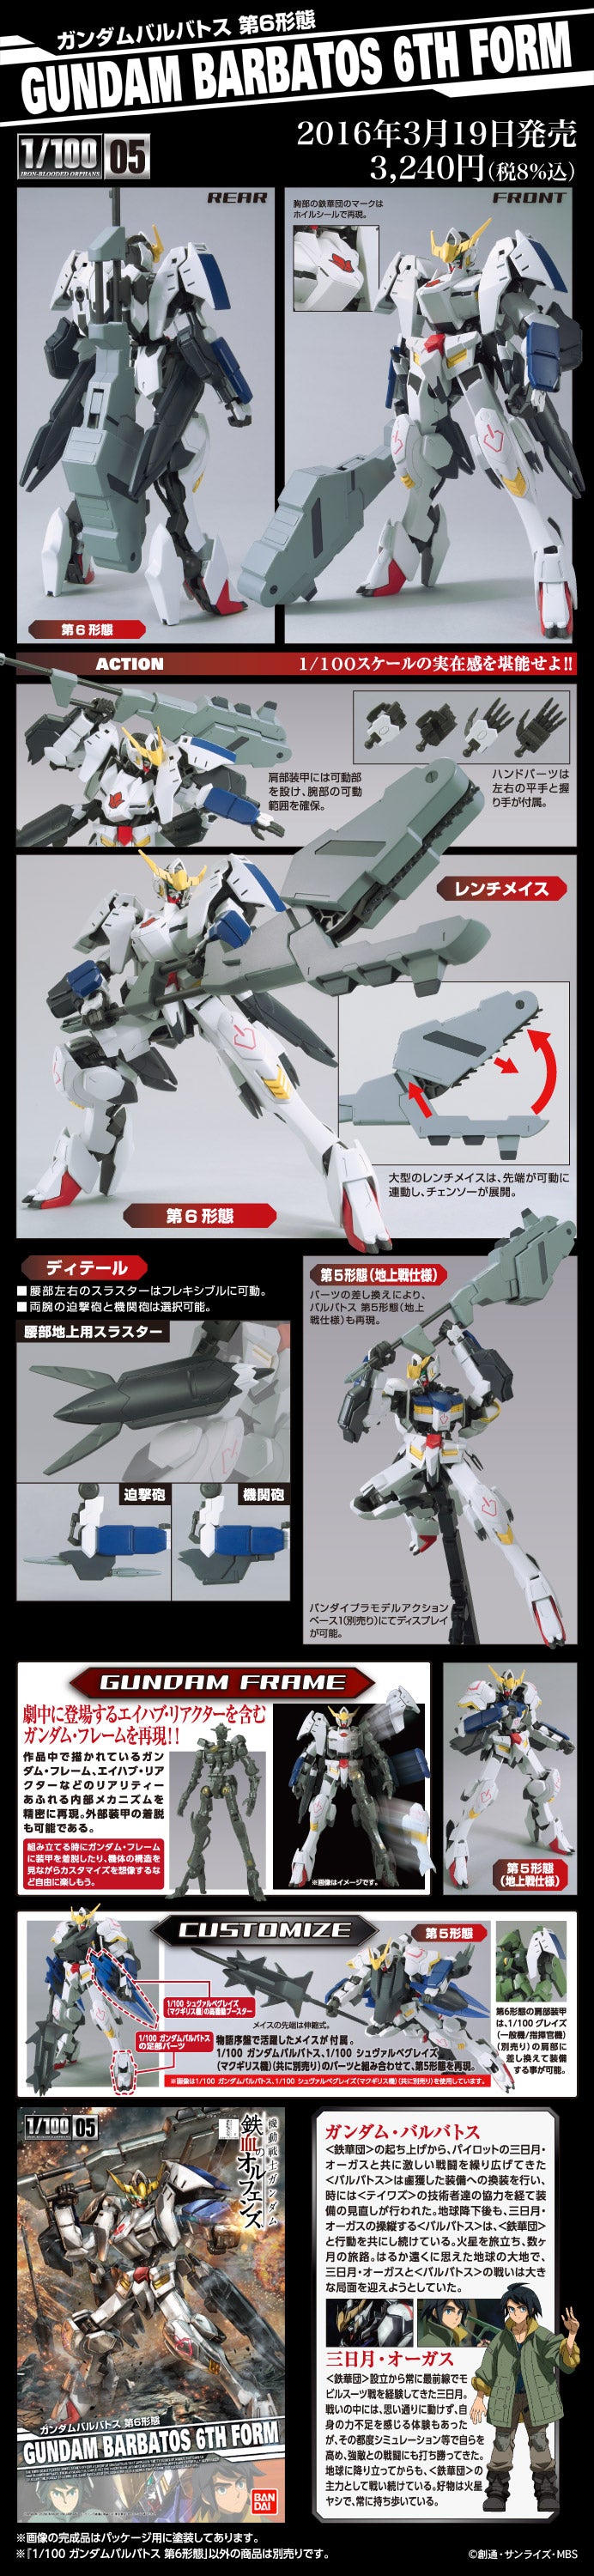 1/100 Non Grade Gundam Barbatos 6th Form